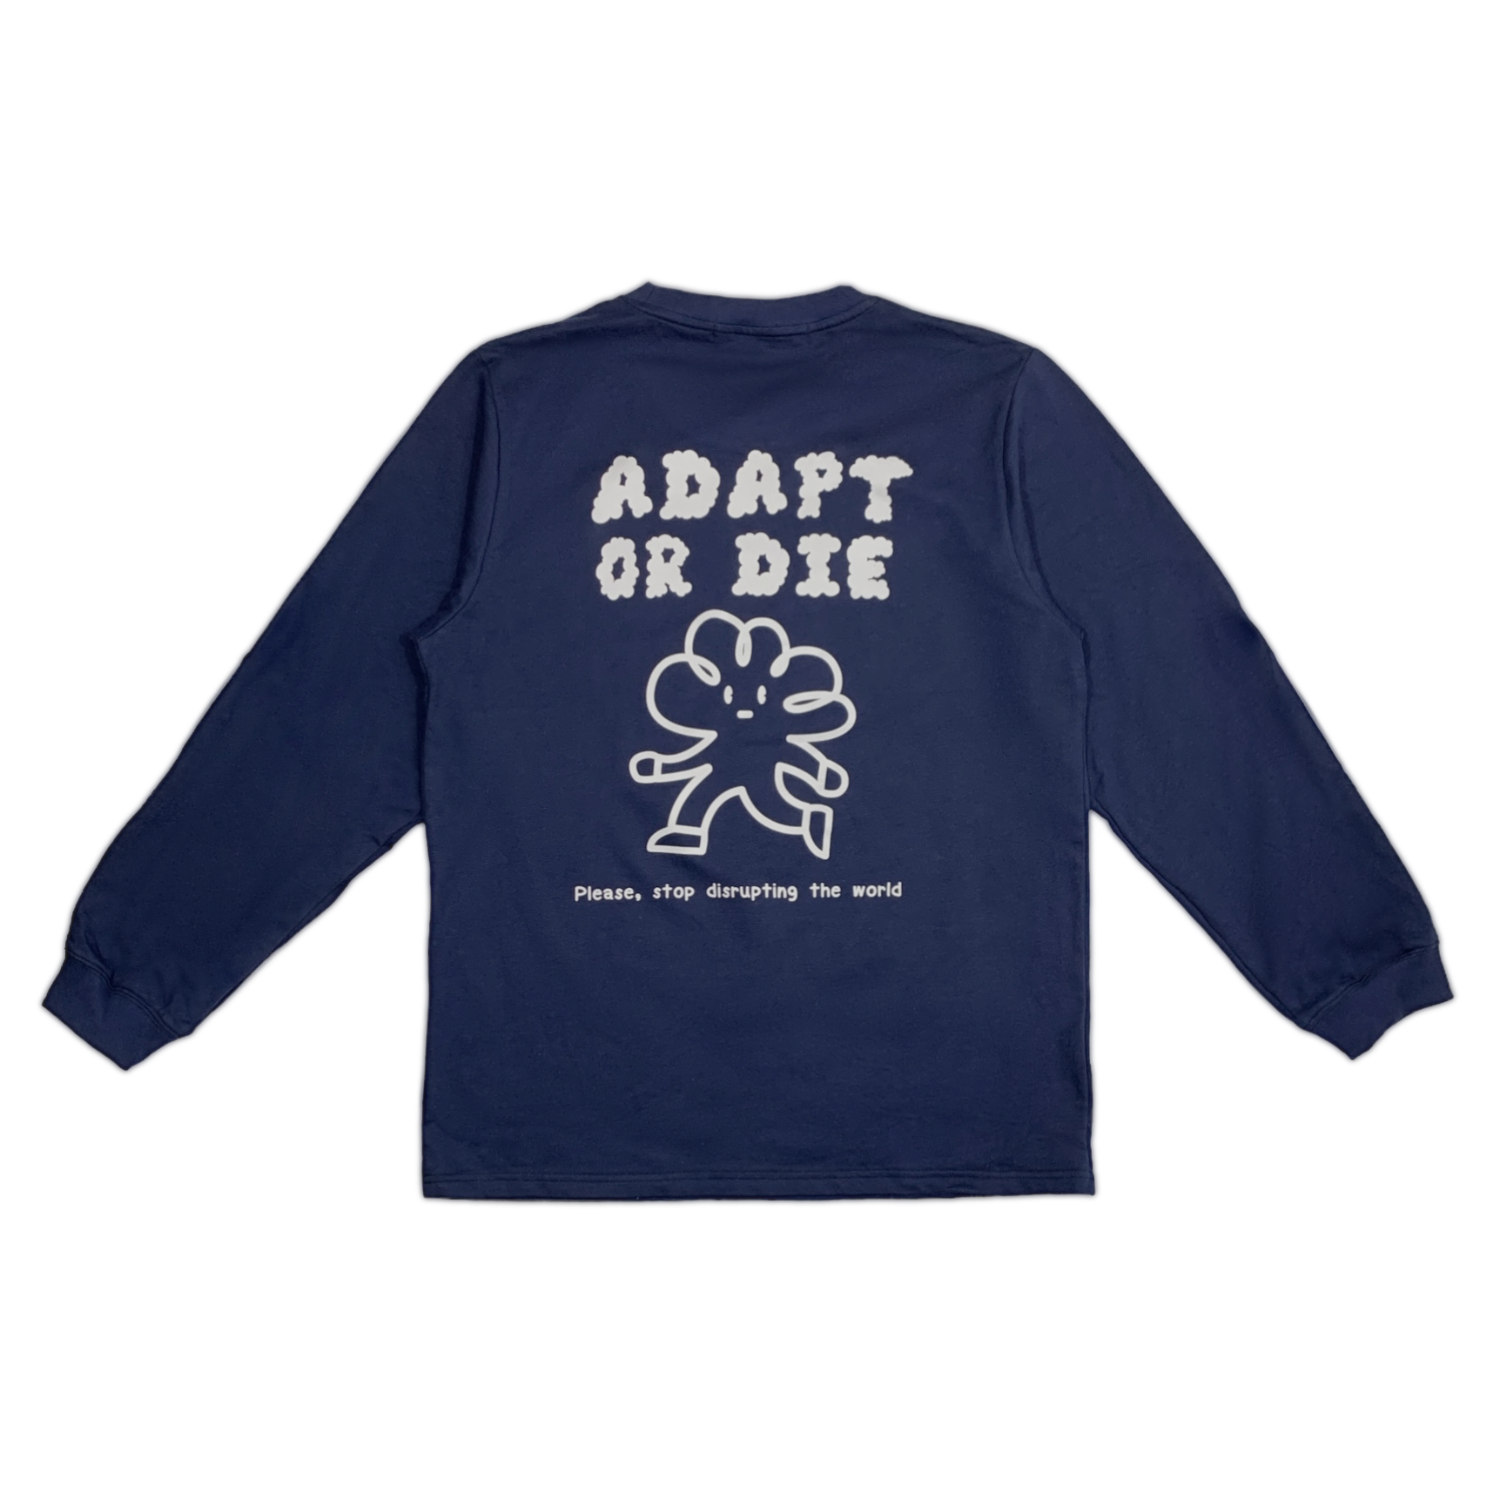 Adapt or die Sweater (Navy)